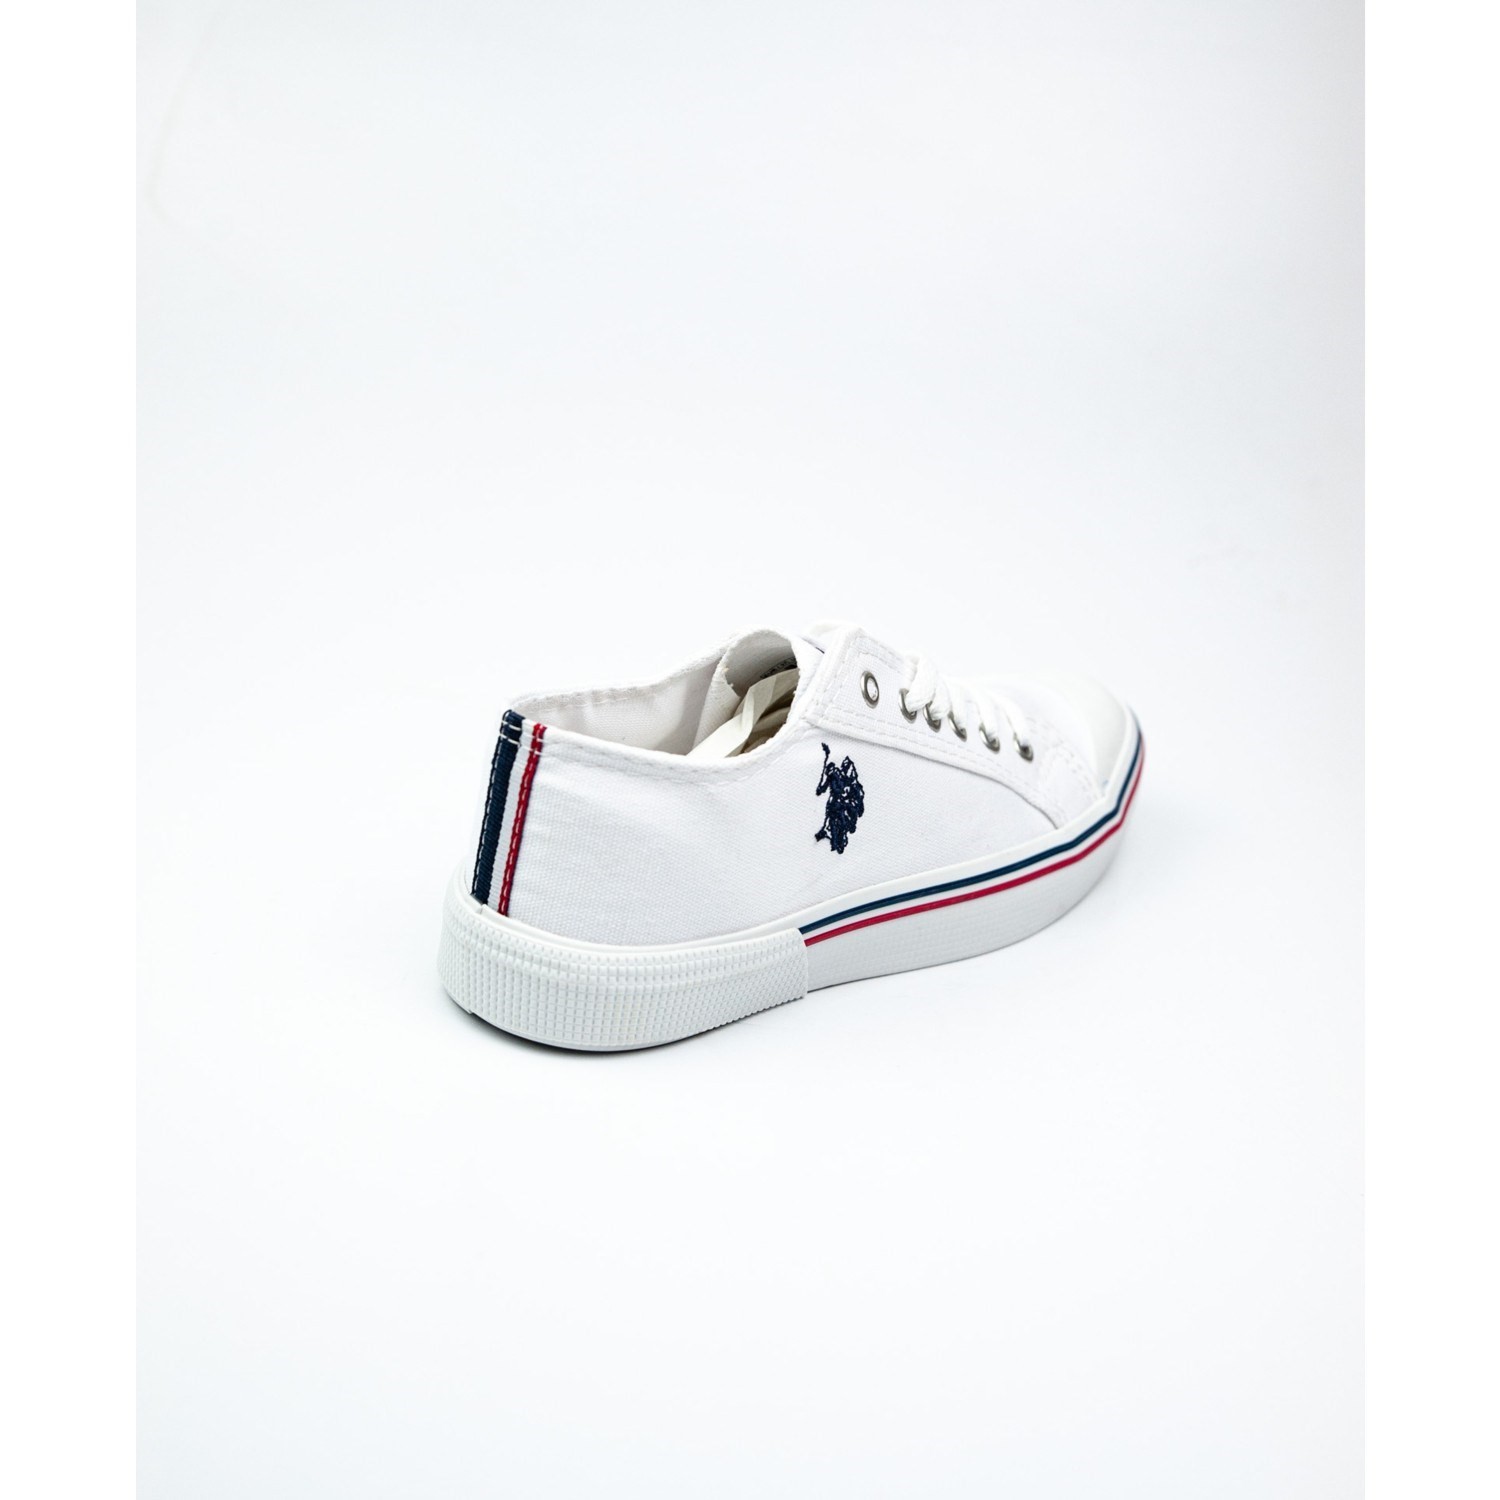 U.s. Polo Assn. Kadın Günlük Ayakkabı Beyaz 3M Penelope 3fx